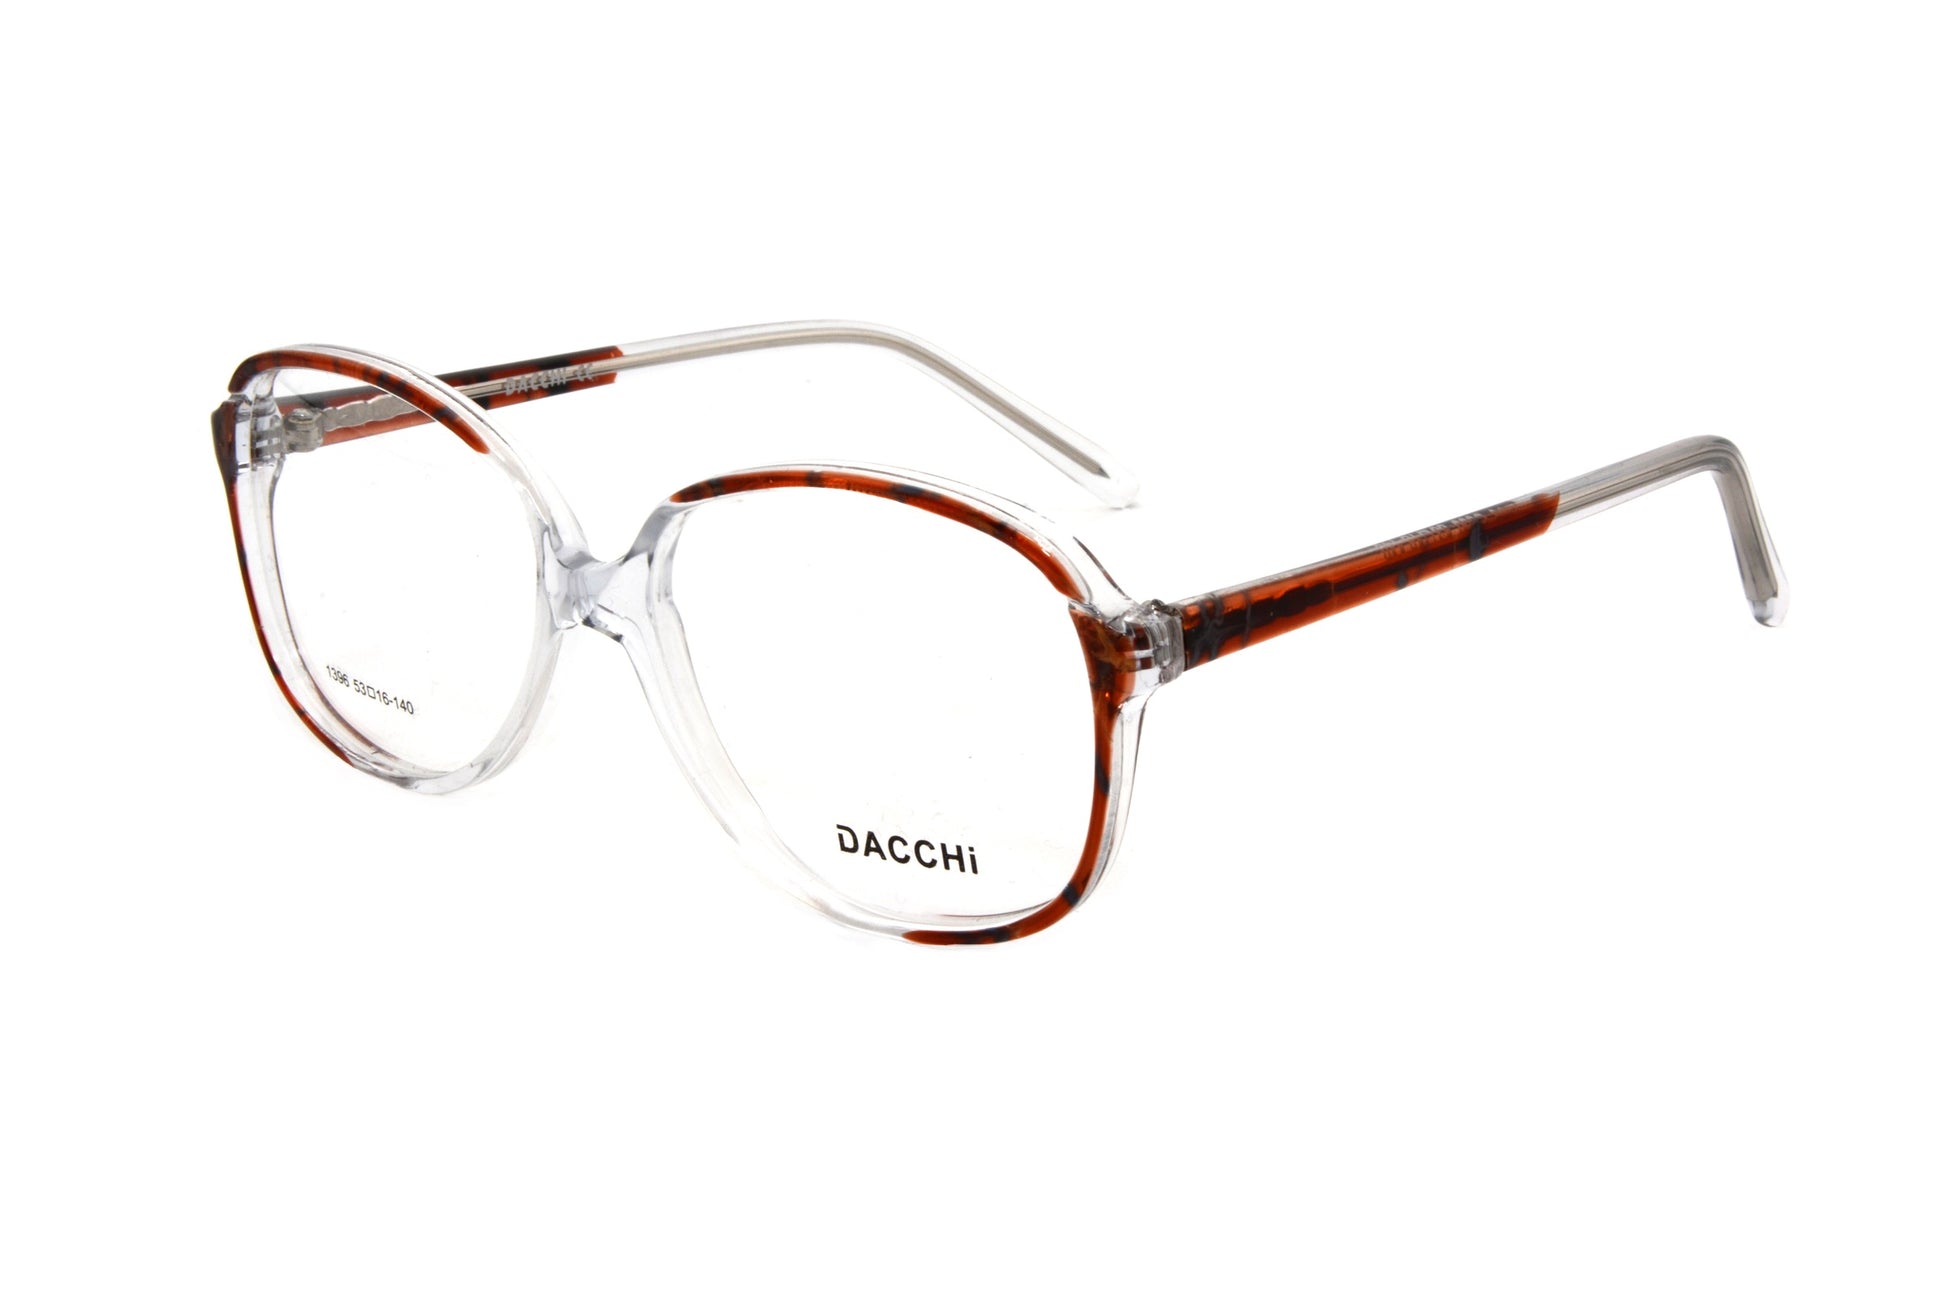 Dacchi eyewear 1396 C500